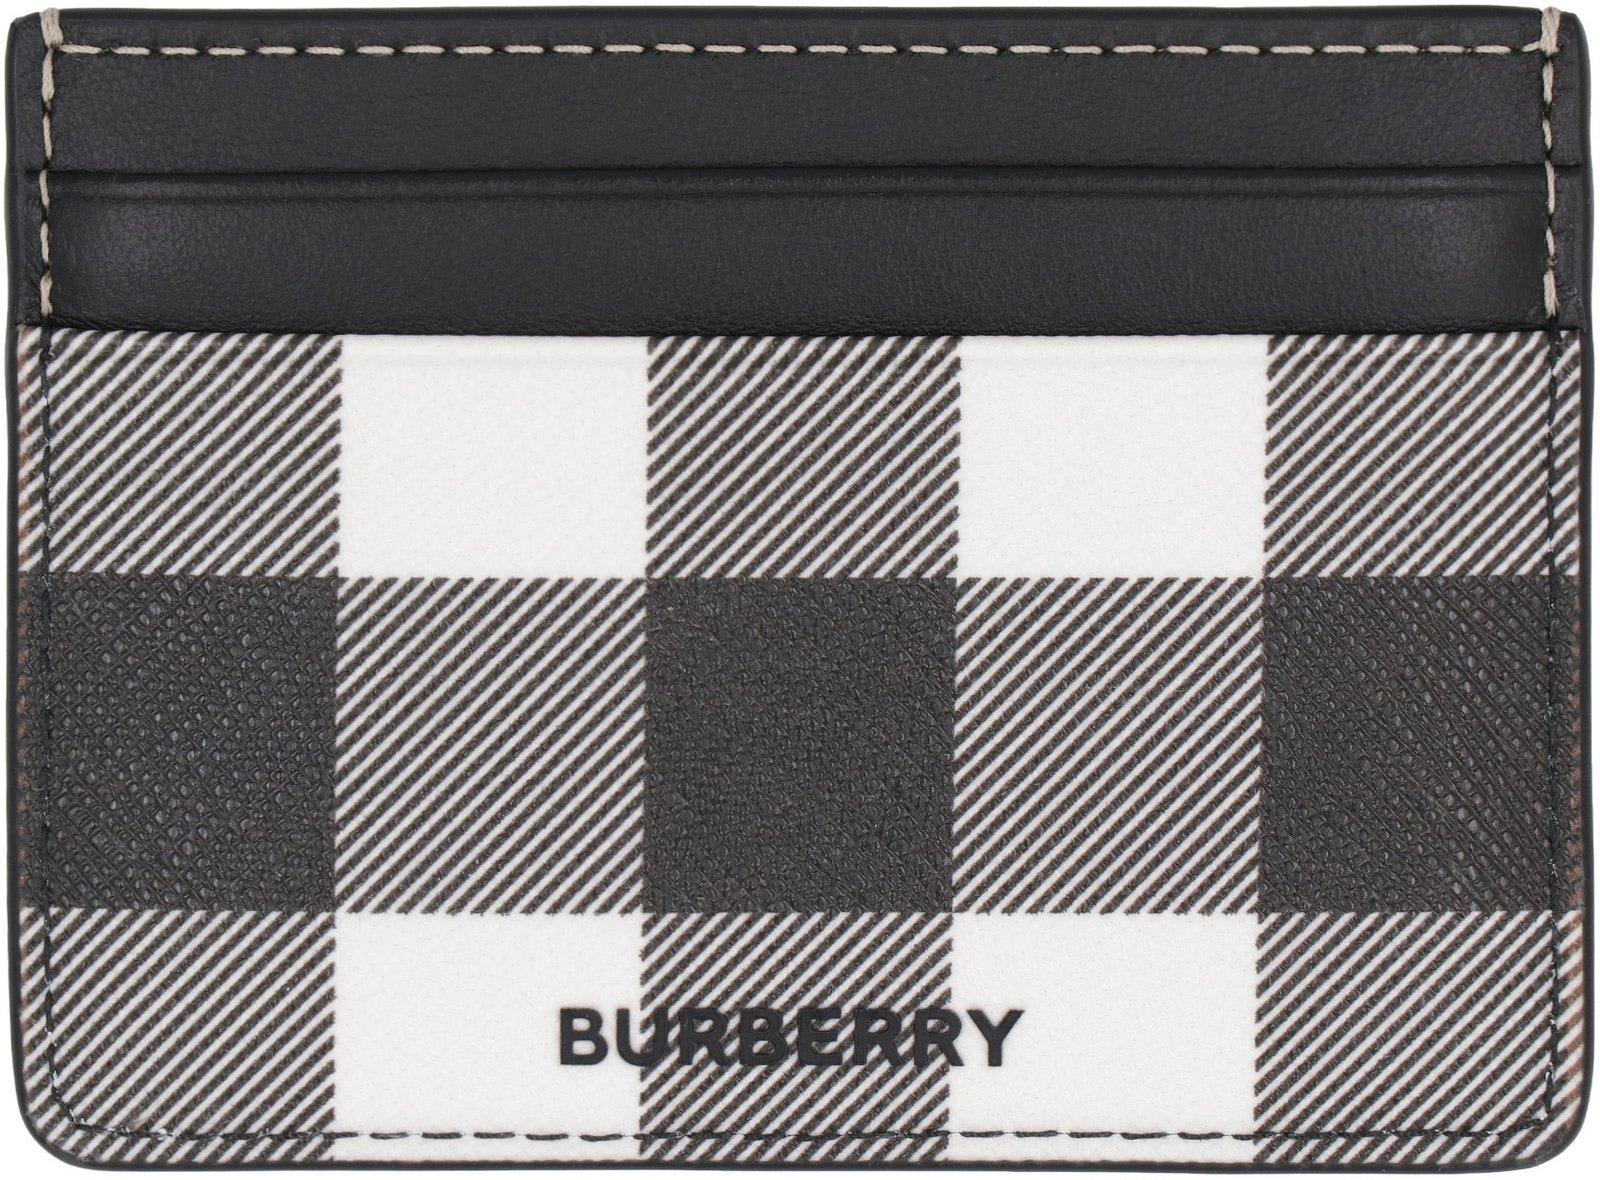 Burberry Checked Logo Plaque Cardholder